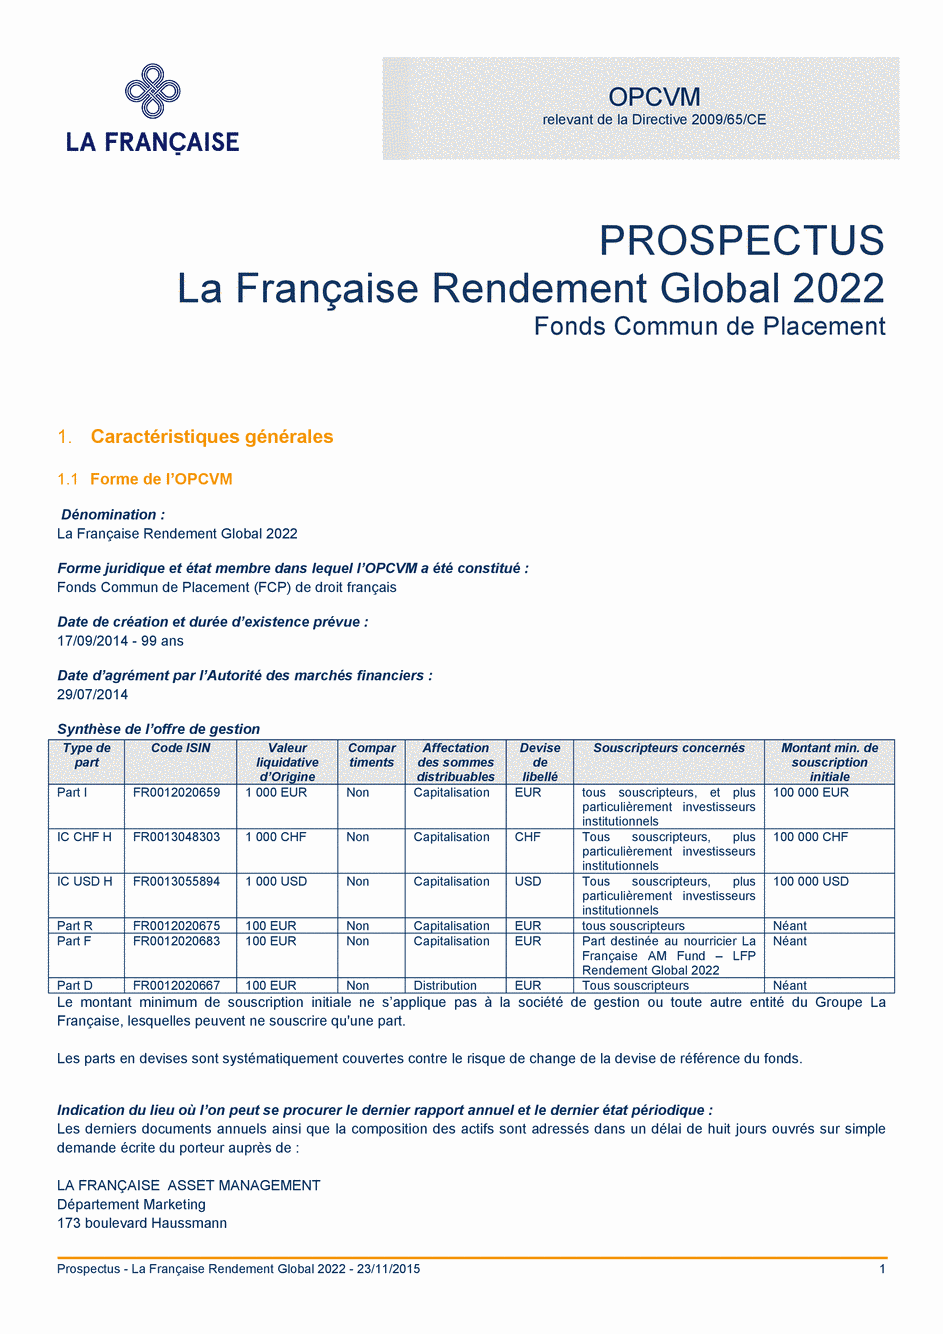 Prospectus La Française Rendement Global 2022 - Part R - 09/11/2015 - Français